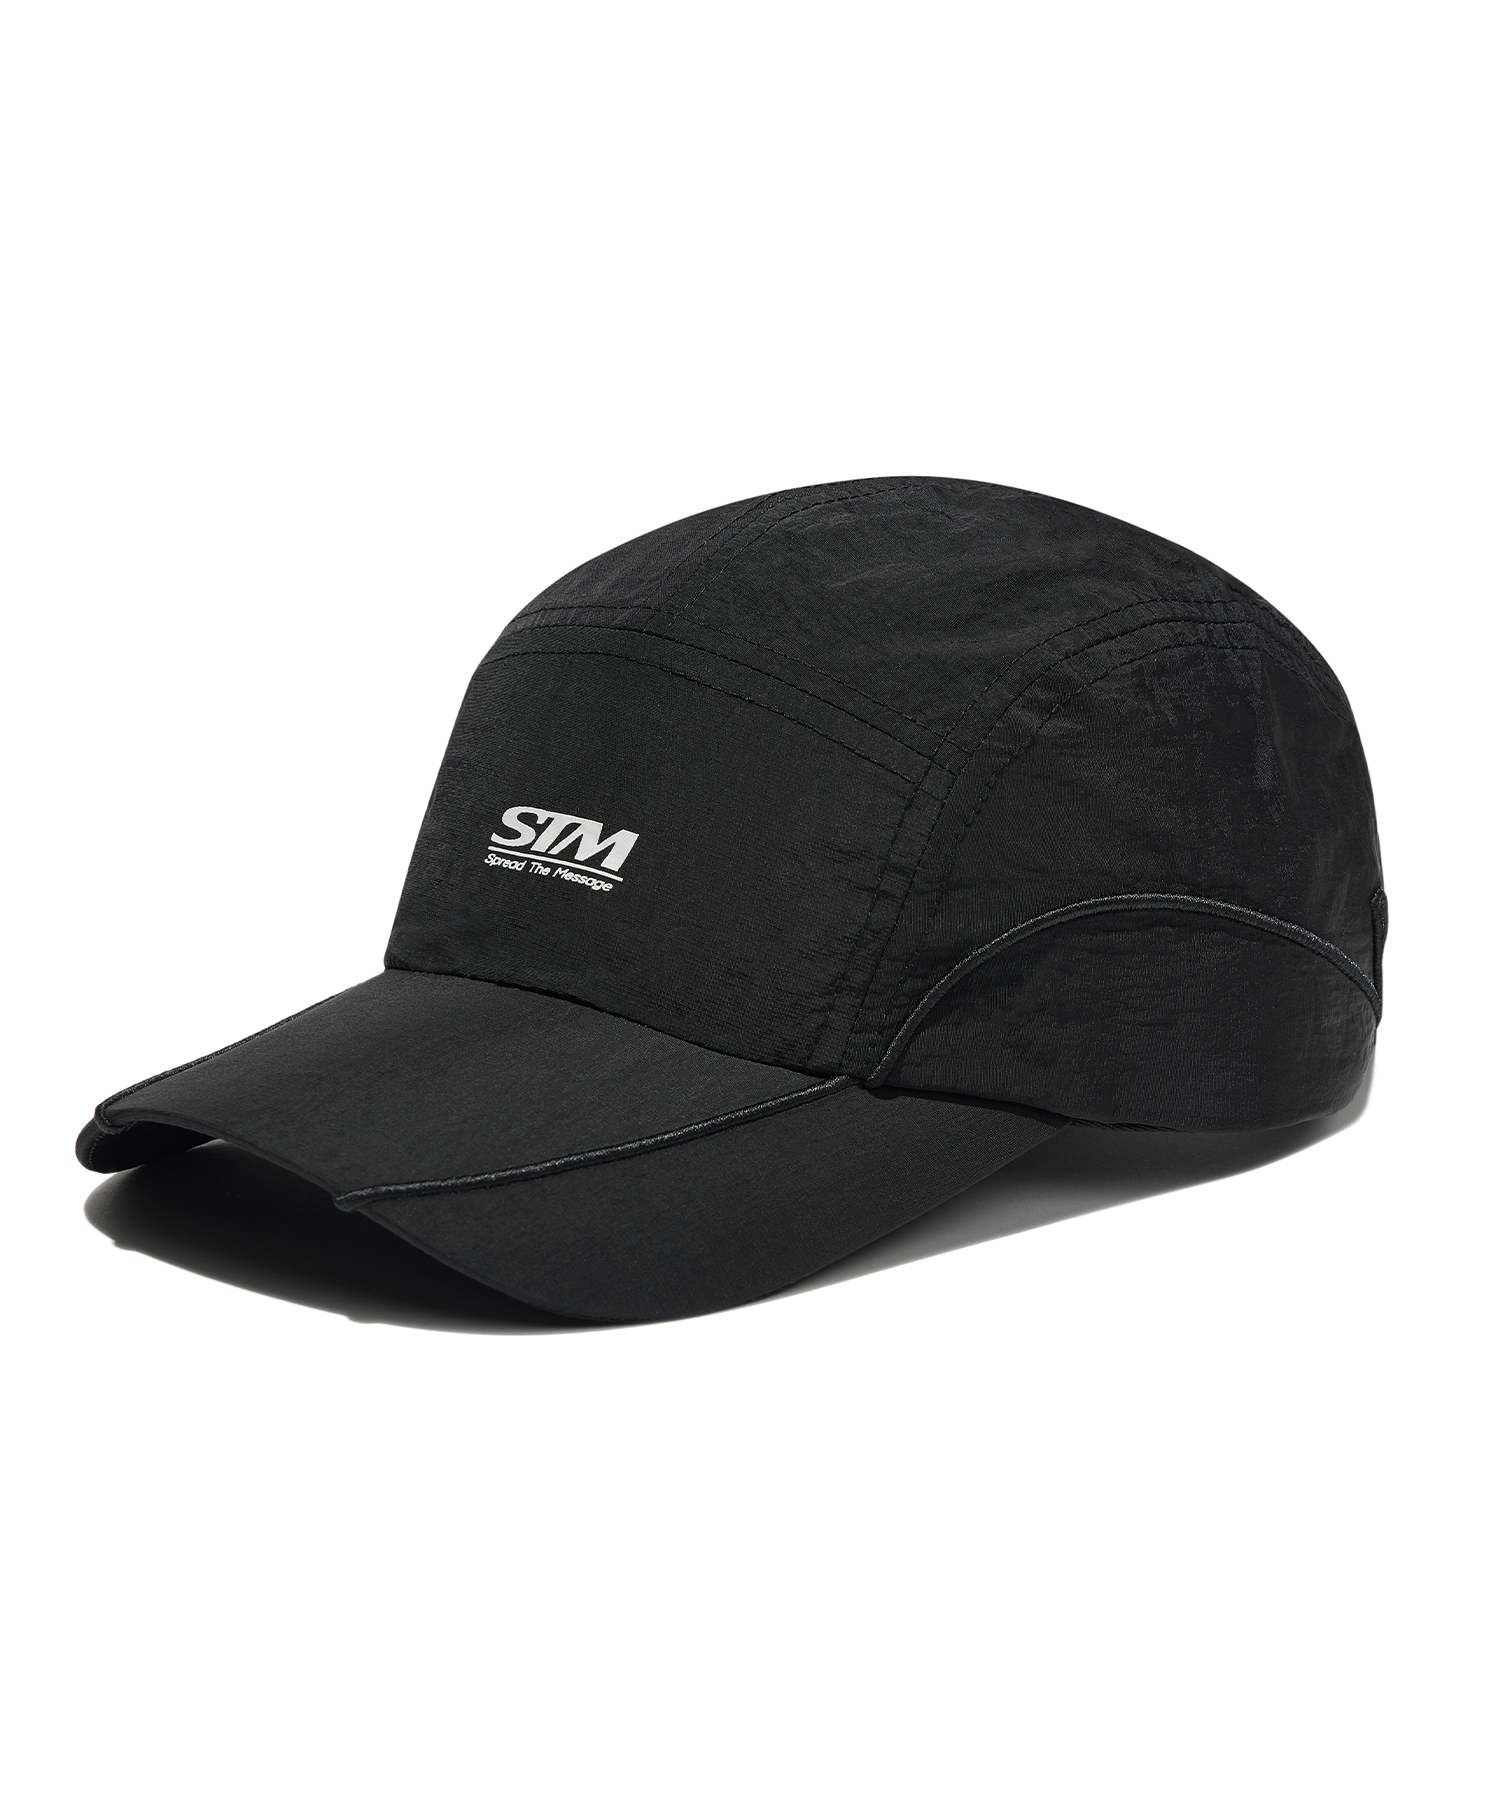 STM CAMP CAP - BLACK brownbreath